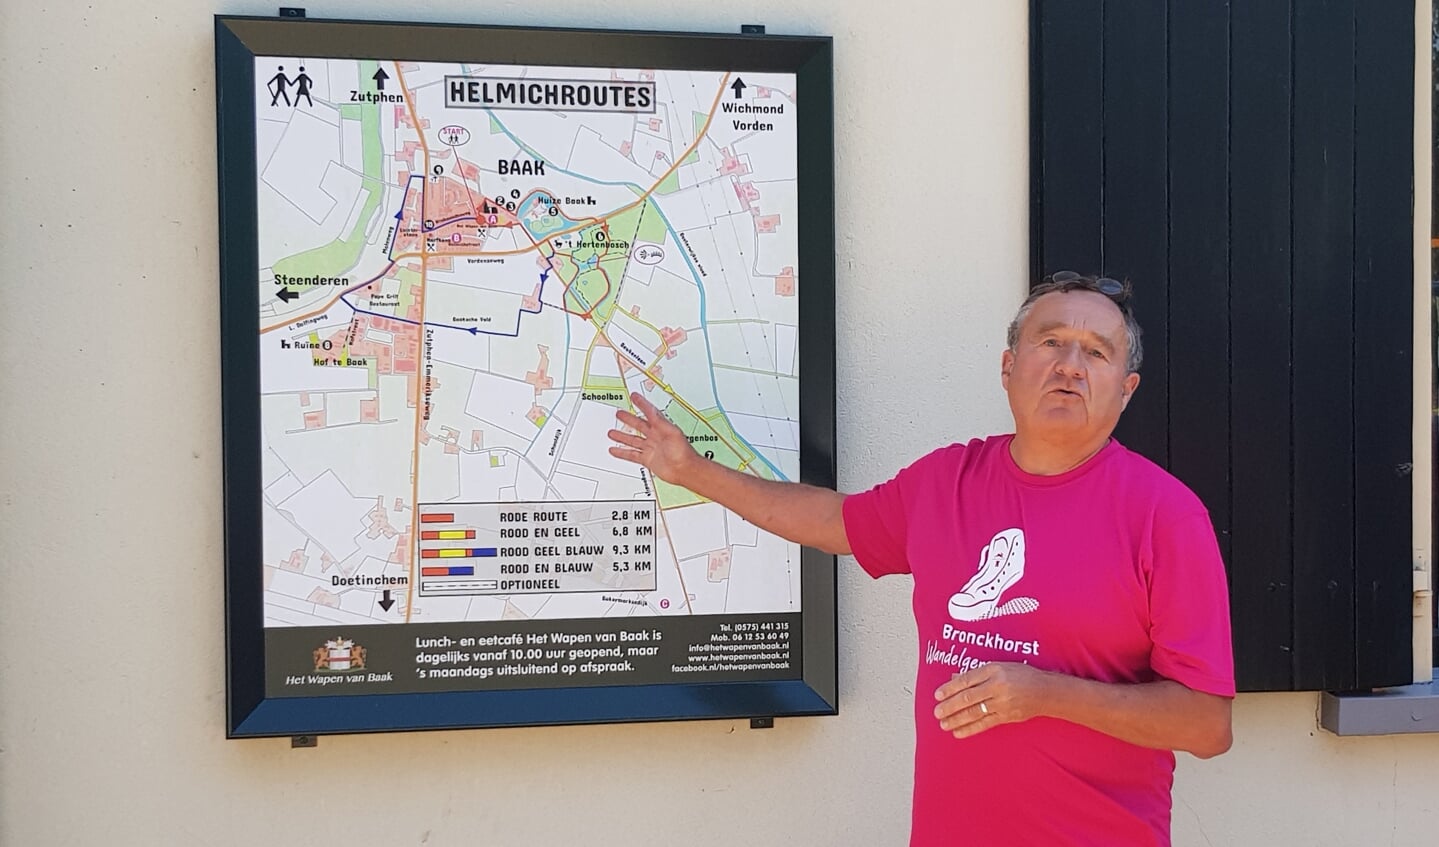 Frans Helmich, de wandelgids tijdens de wandelroute in Baak, toont op de kaart waar de route de wandelaars heen brengt. Foto: Alice Rouwhorst